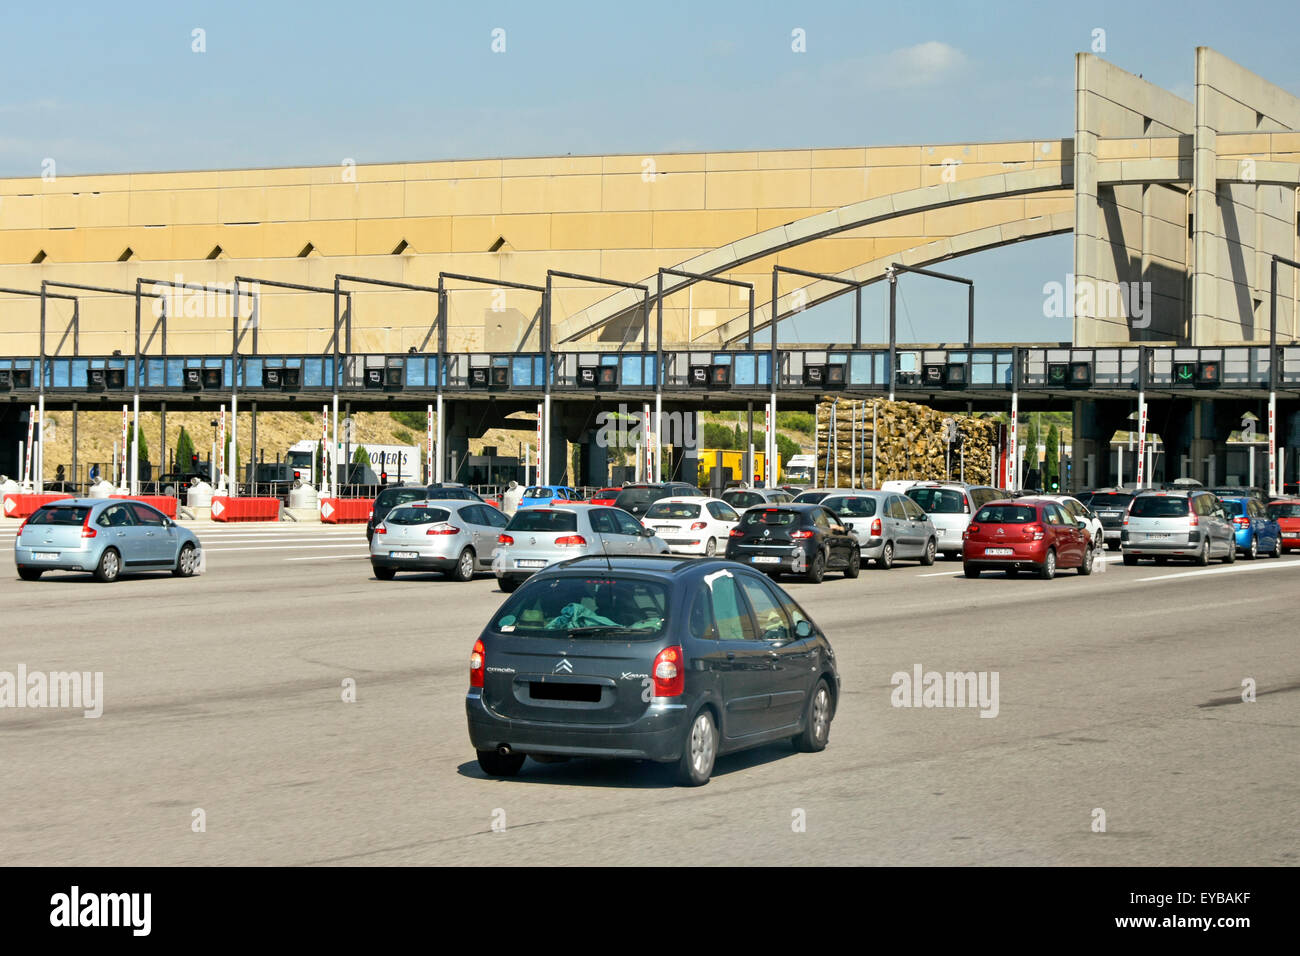 La France d'autoroute voitures arrivant à péage typique sur l'Autoroute de la route au soleil en Provence Sud de la France Europe Banque D'Images